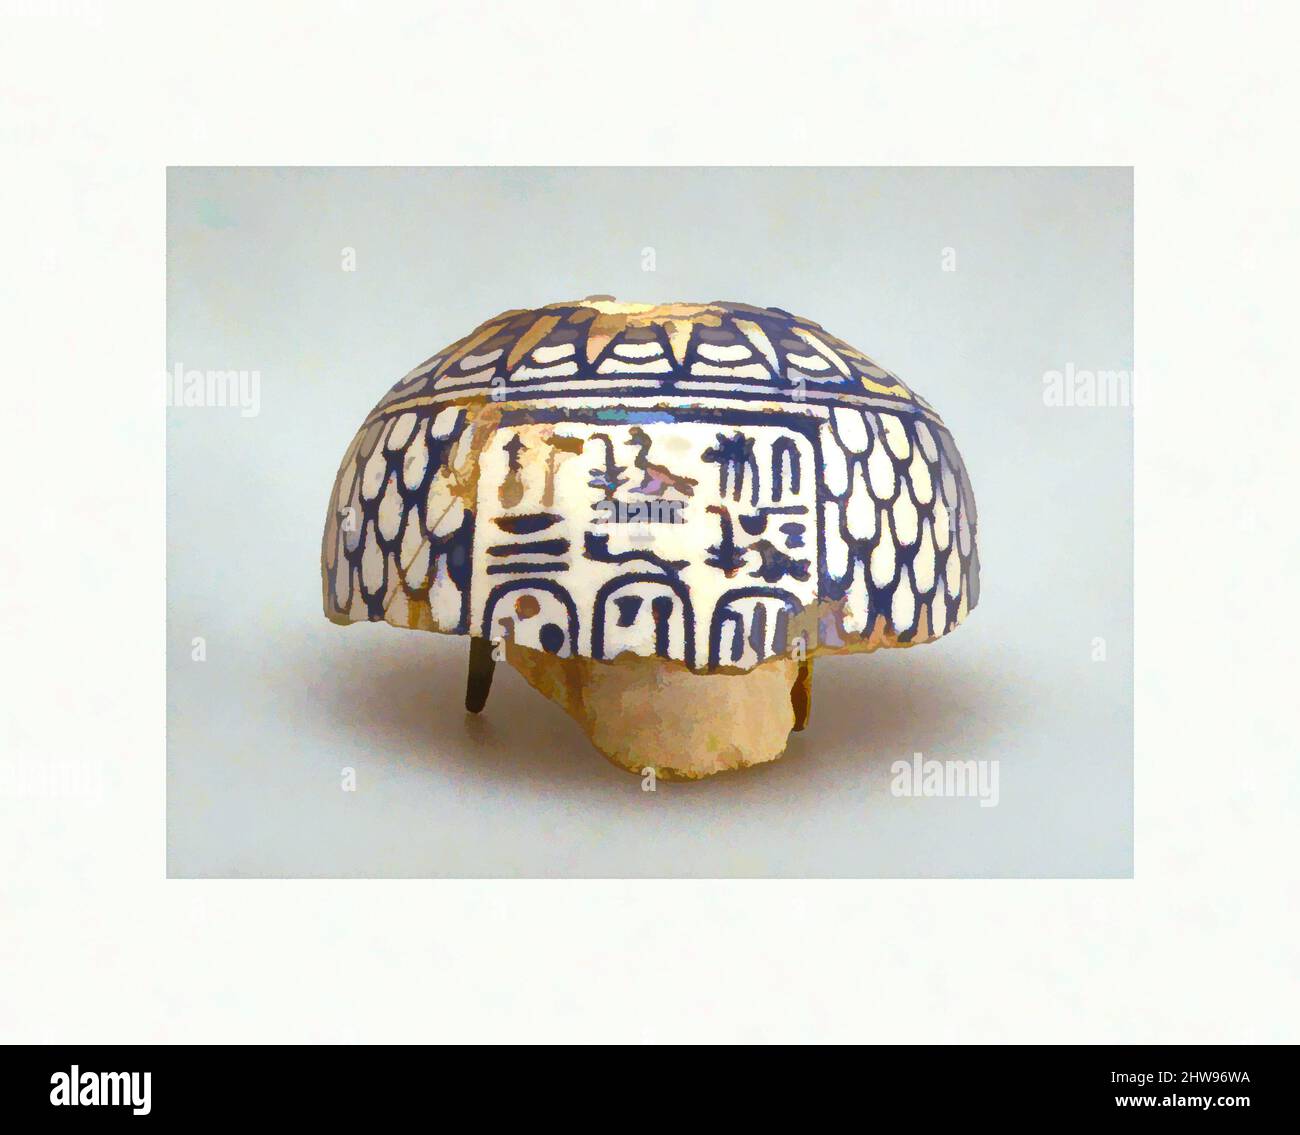 Kunst inspiriert von Vase Fragment mit den Namen von Amenhotep III, Tiye, und Hennetaneb, New Kingdom, Dynasty 18, Ca. 1390–1352 v. Chr., aus Ägypten, Faience, Klassische Werke, die von Artotop mit einem Schuss Moderne modernisiert wurden. Formen, Farbe und Wert, auffällige visuelle Wirkung auf Kunst. Emotionen durch Freiheit von Kunstwerken auf zeitgemäße Weise. Eine zeitlose Botschaft, die eine wild kreative neue Richtung verfolgt. Künstler, die sich dem digitalen Medium zuwenden und die Artotop NFT erschaffen Stockfoto